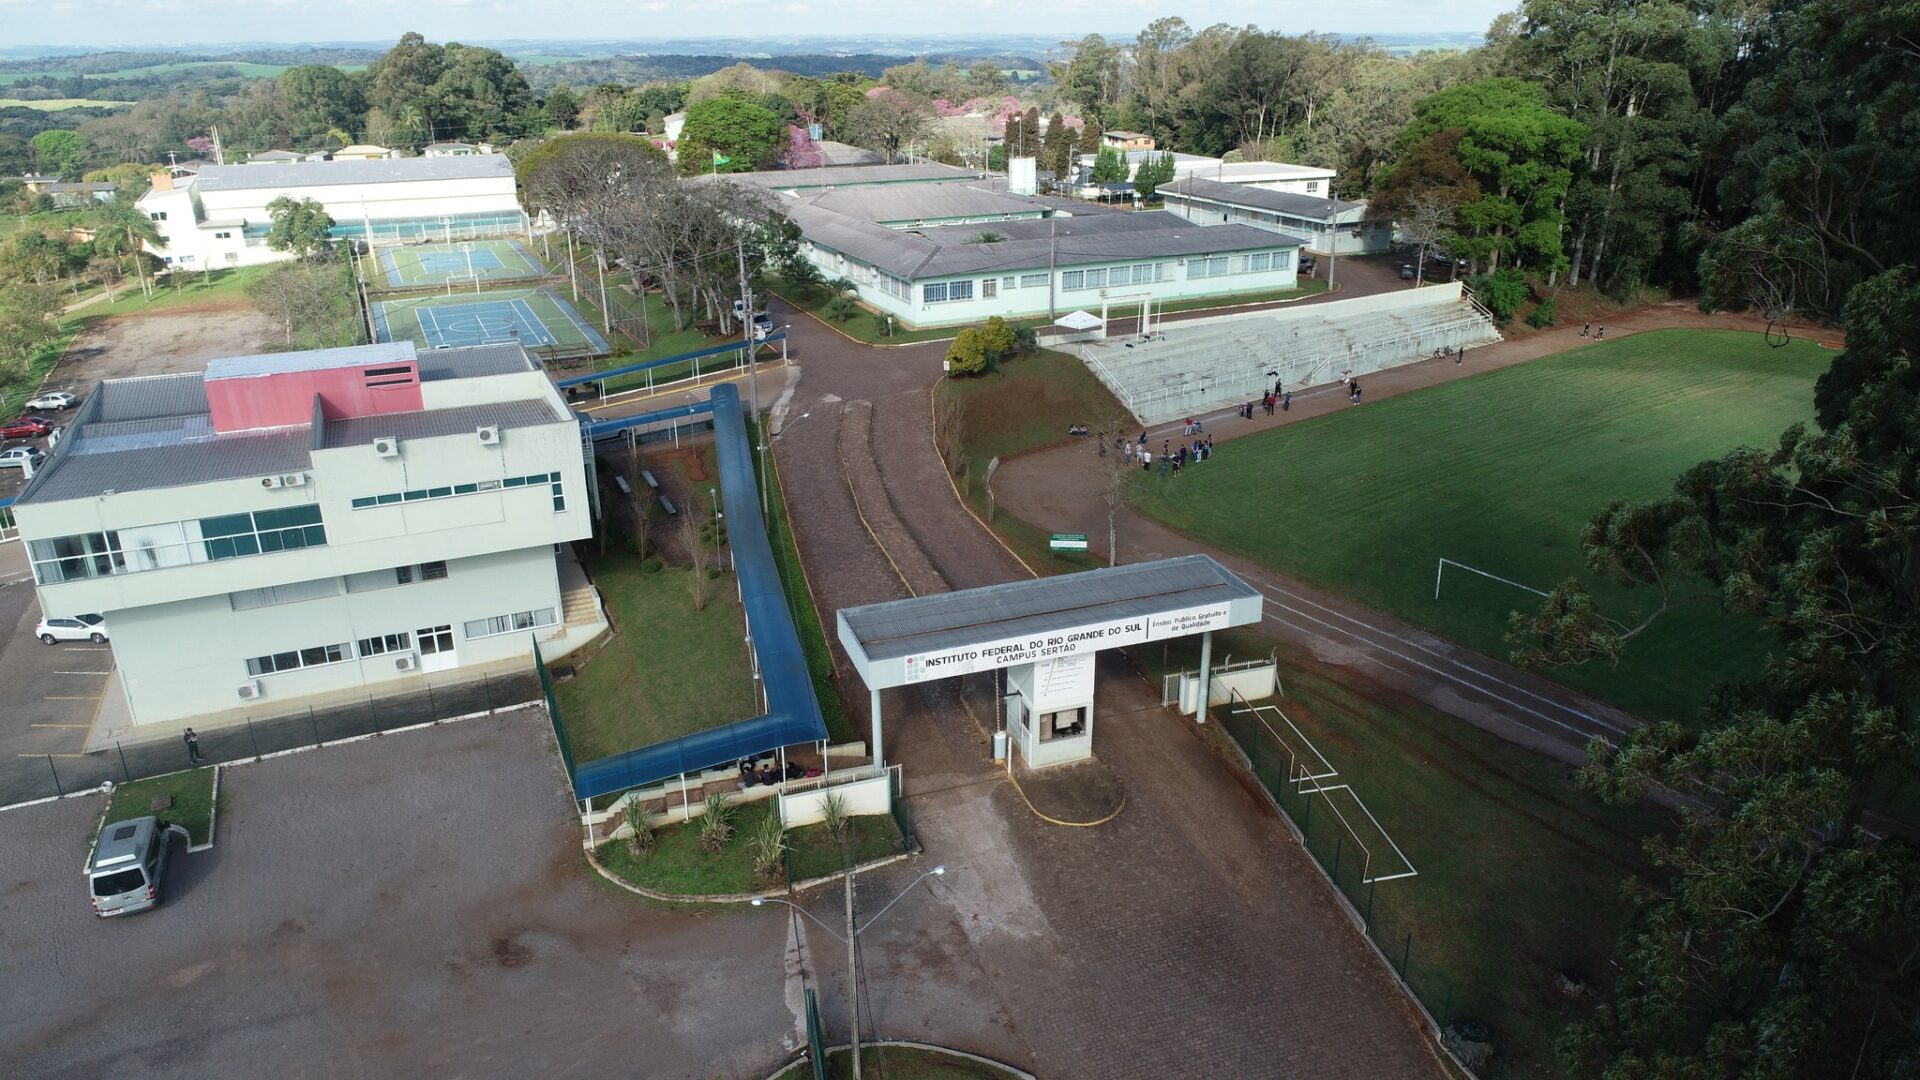 Destaque para o município de localização do IFRS Campus Sertão (de